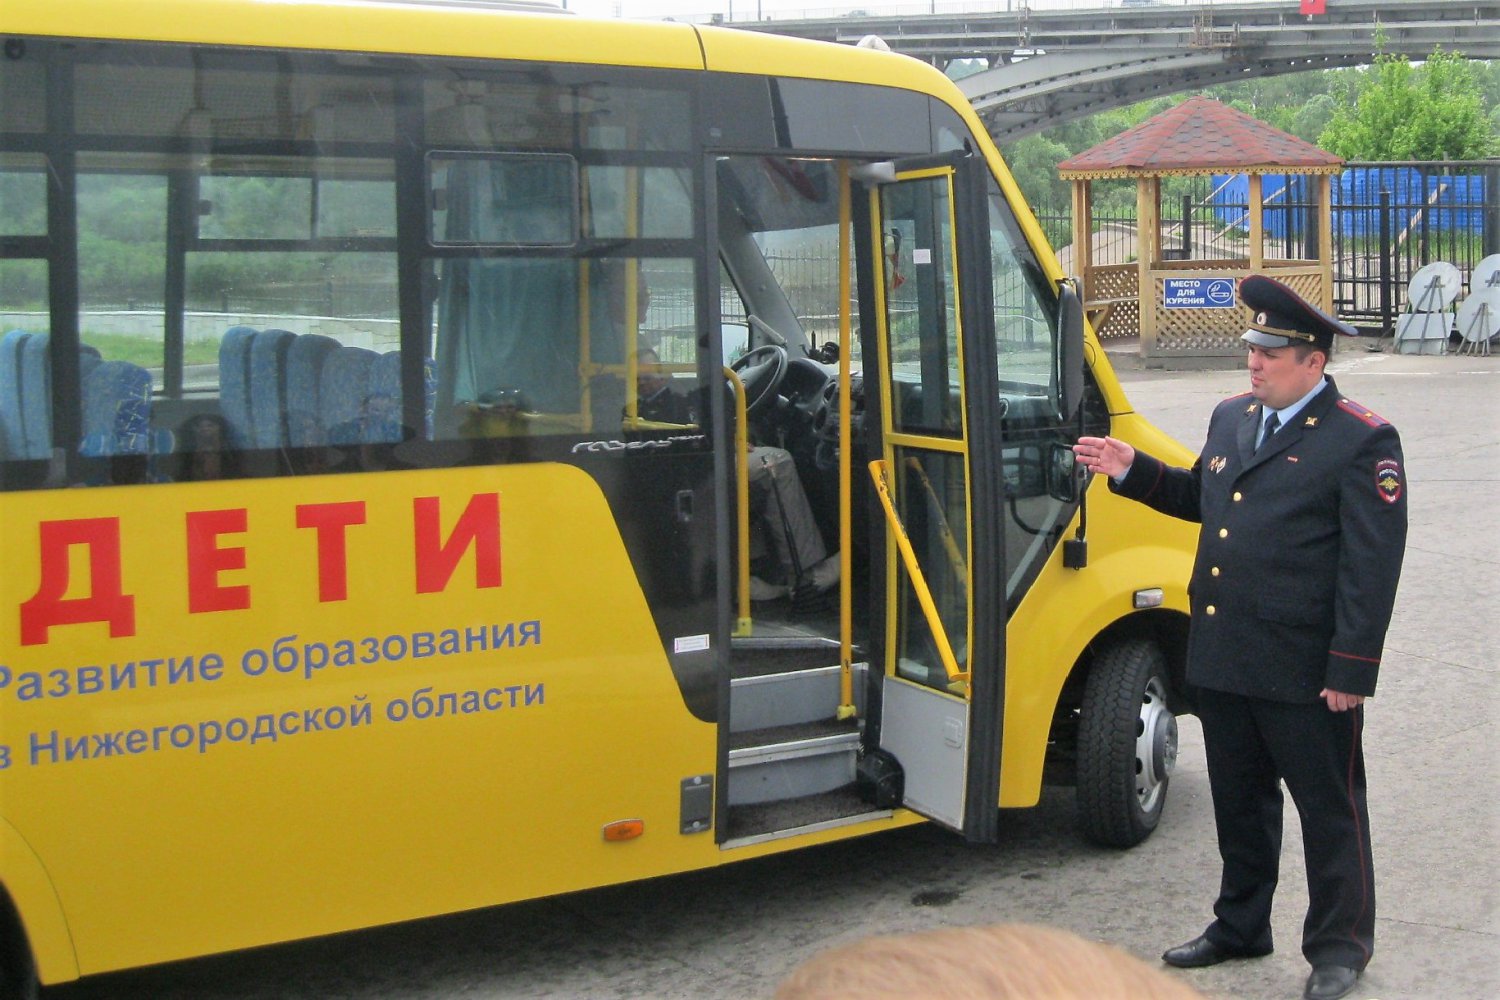 Ближнепесоченская школа купила автобус